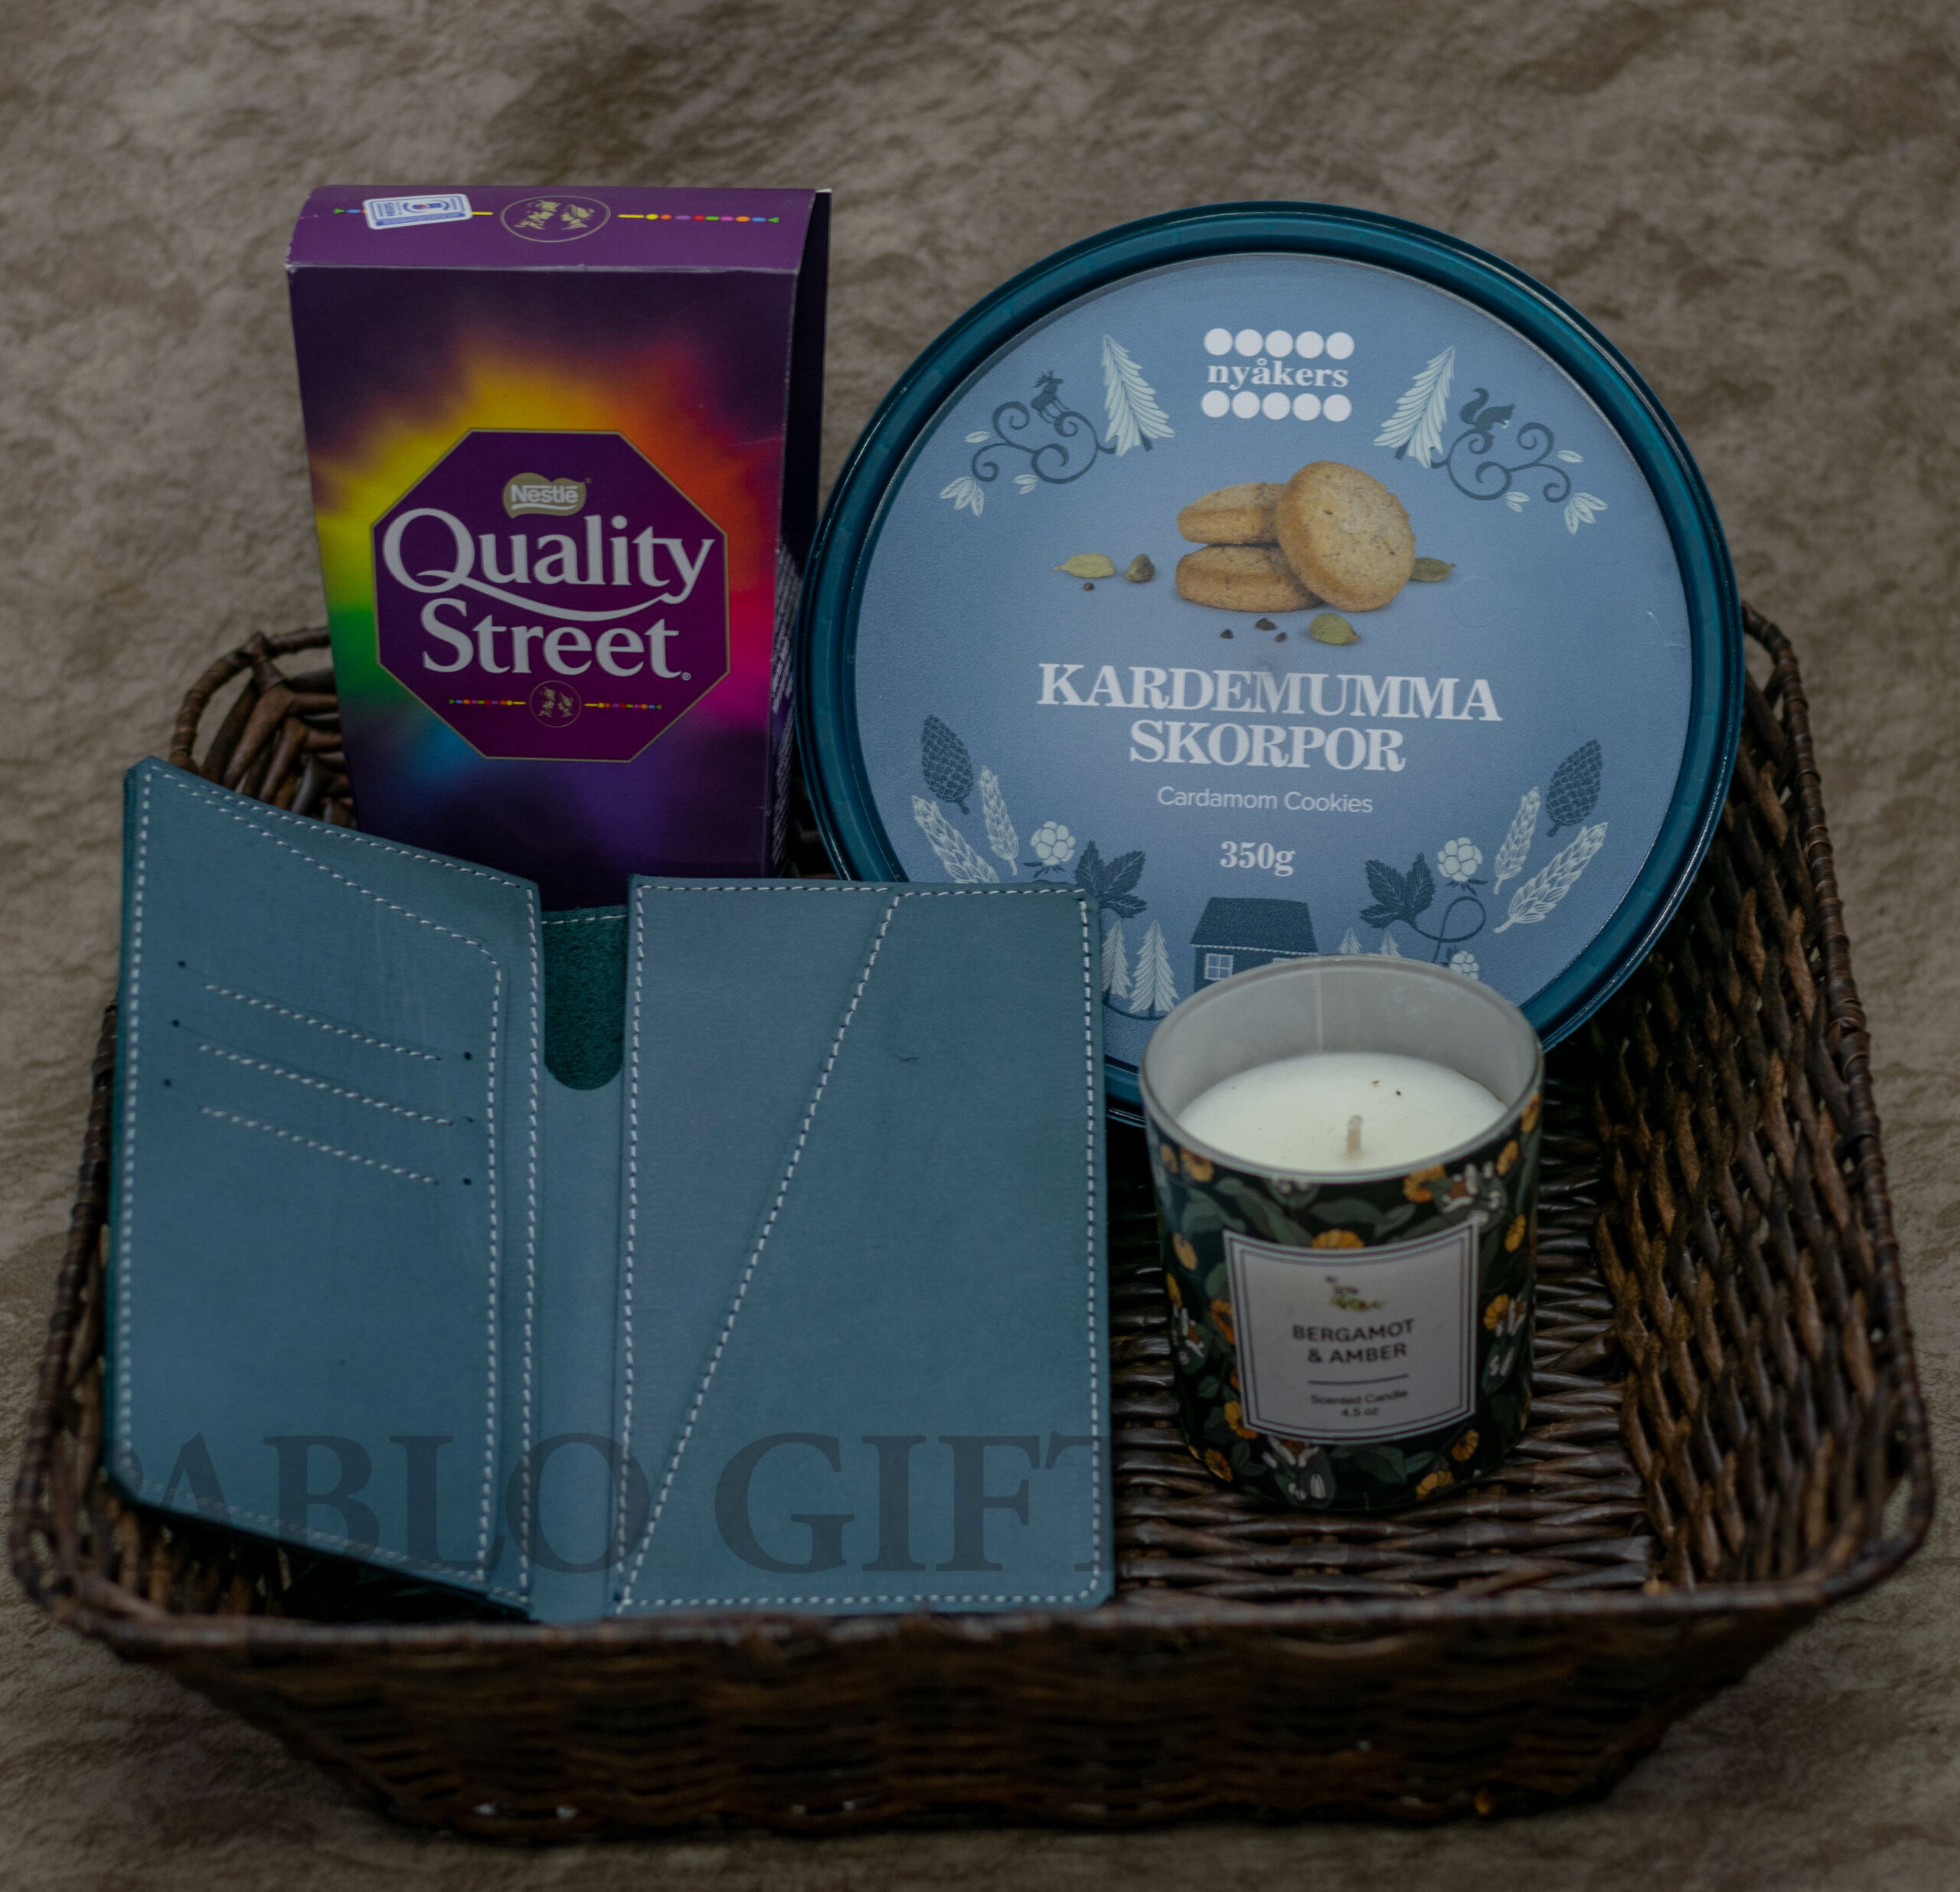 Secret Santa Gift Basket